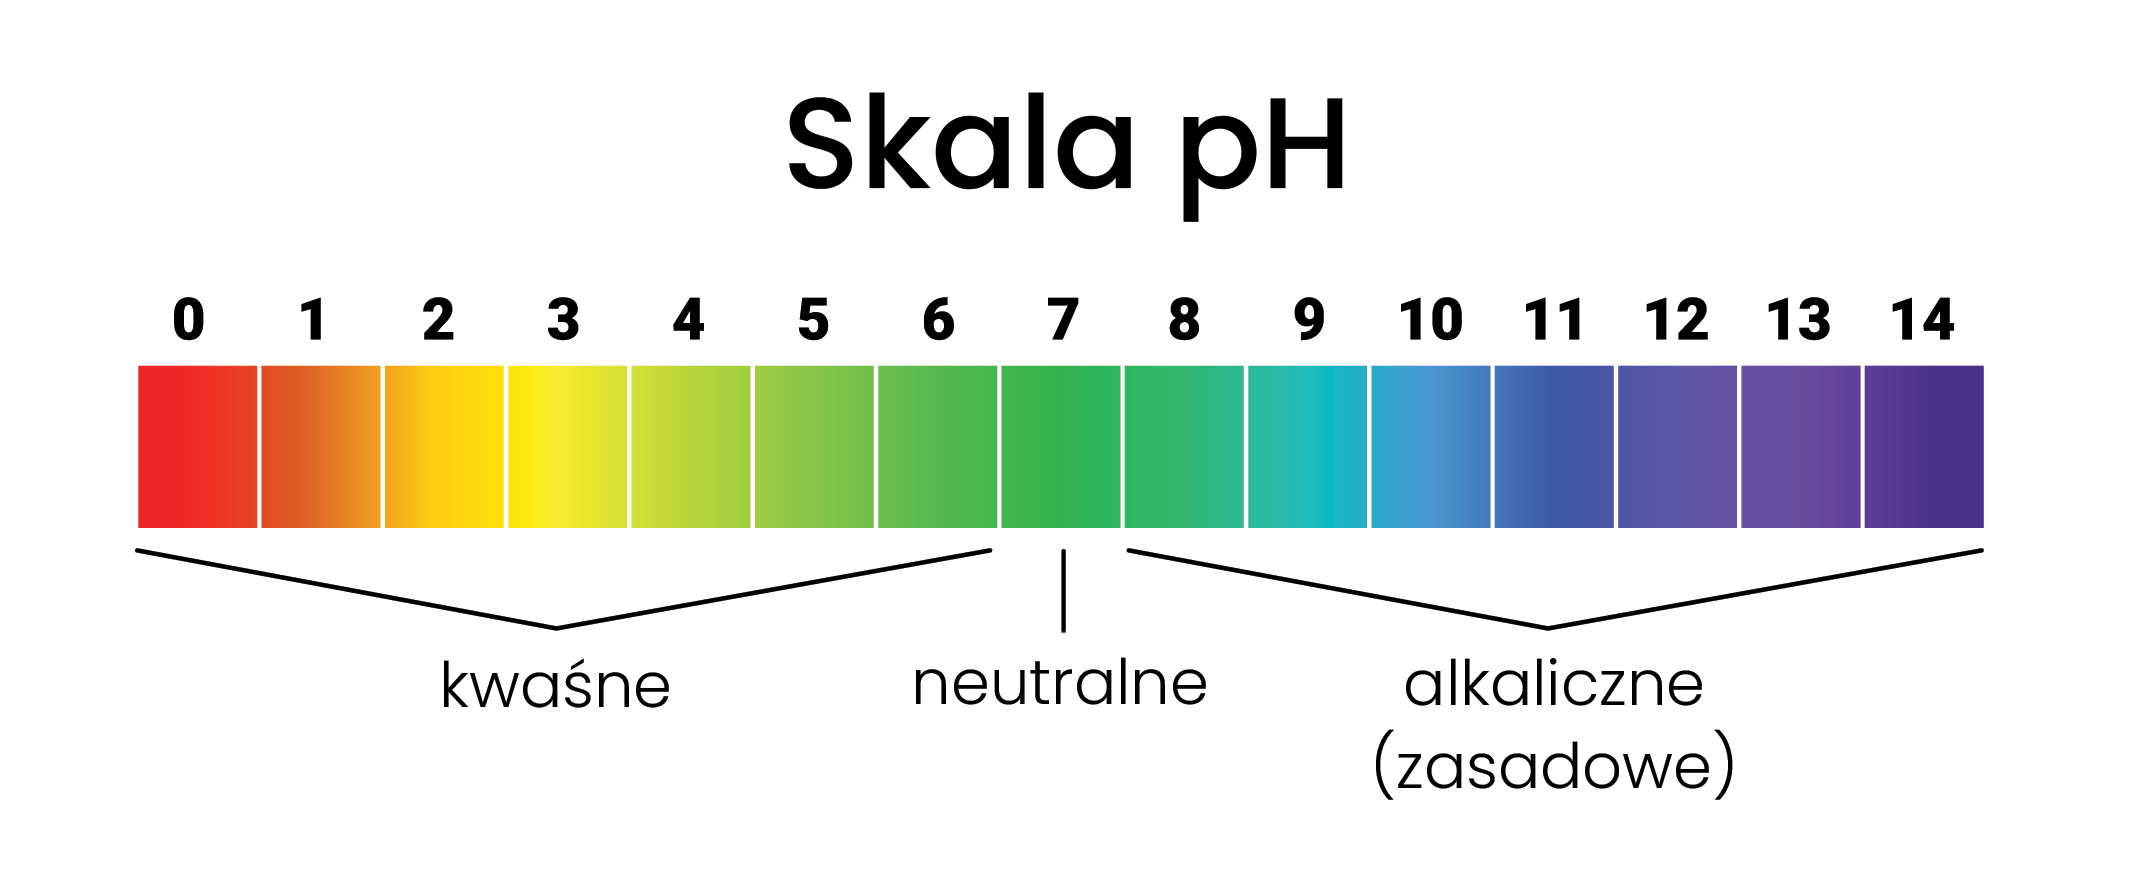 skala pH